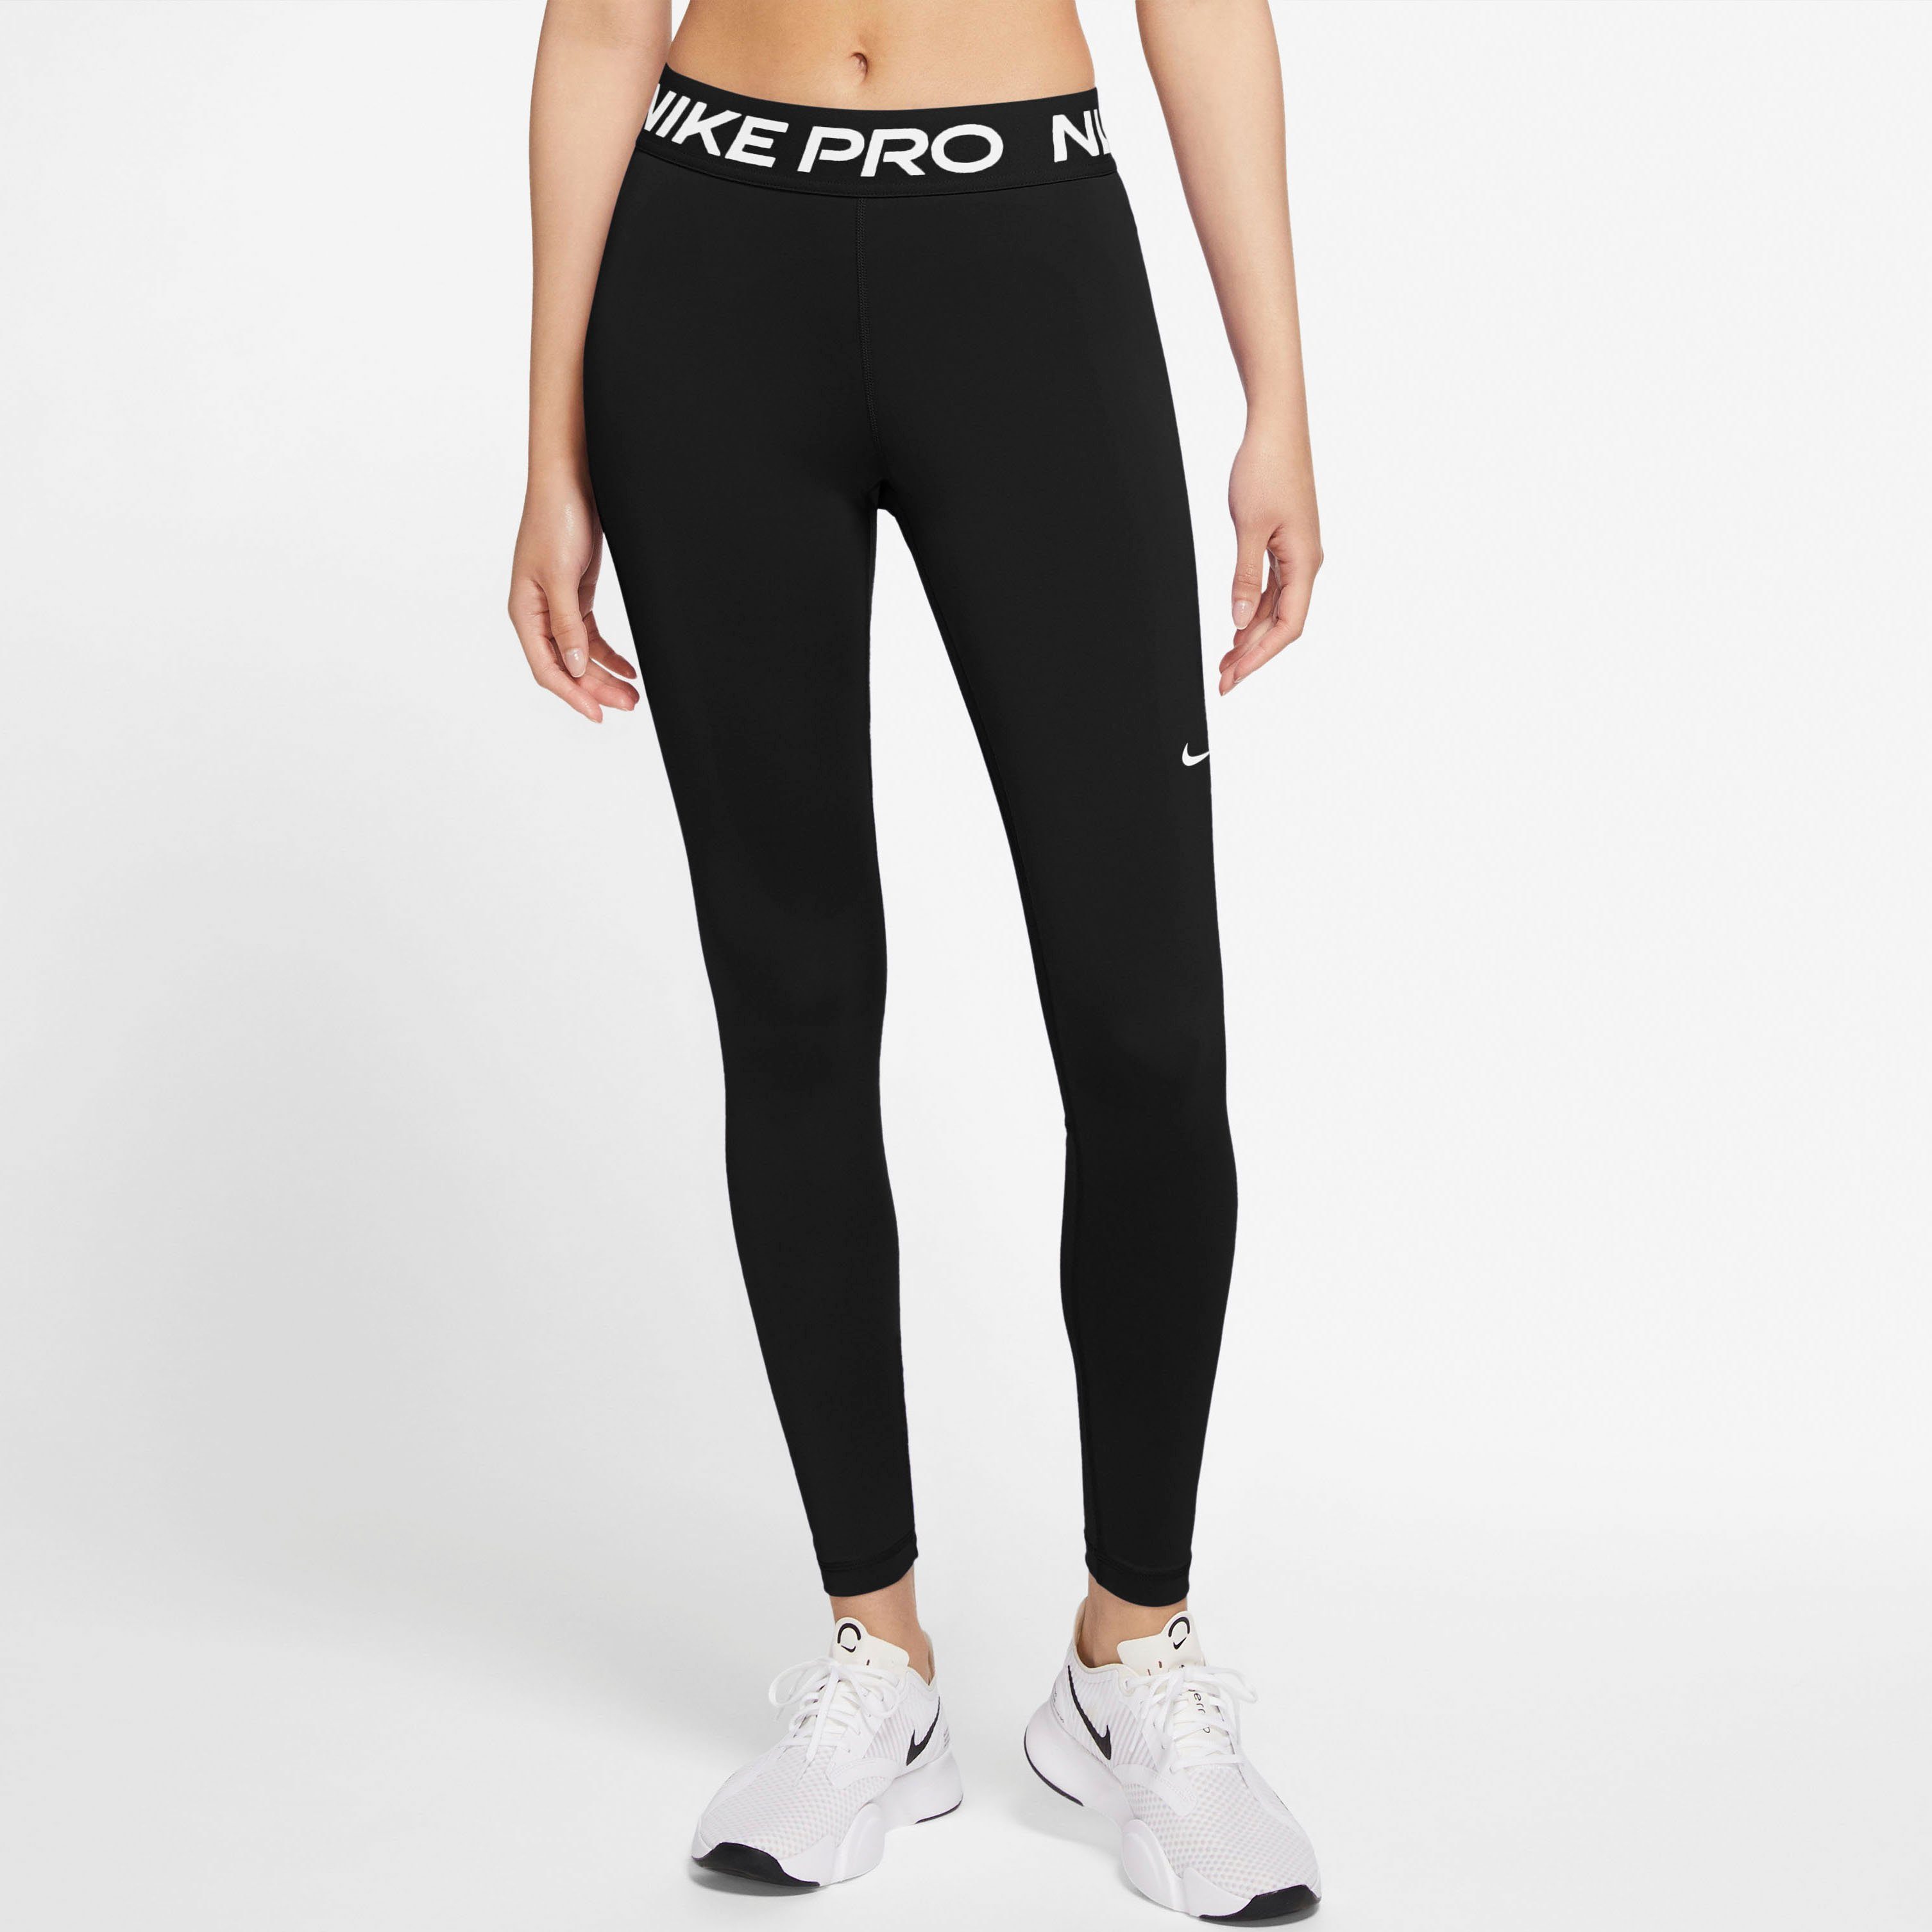 Nike Yogahosen für Damen online kaufen | OTTO